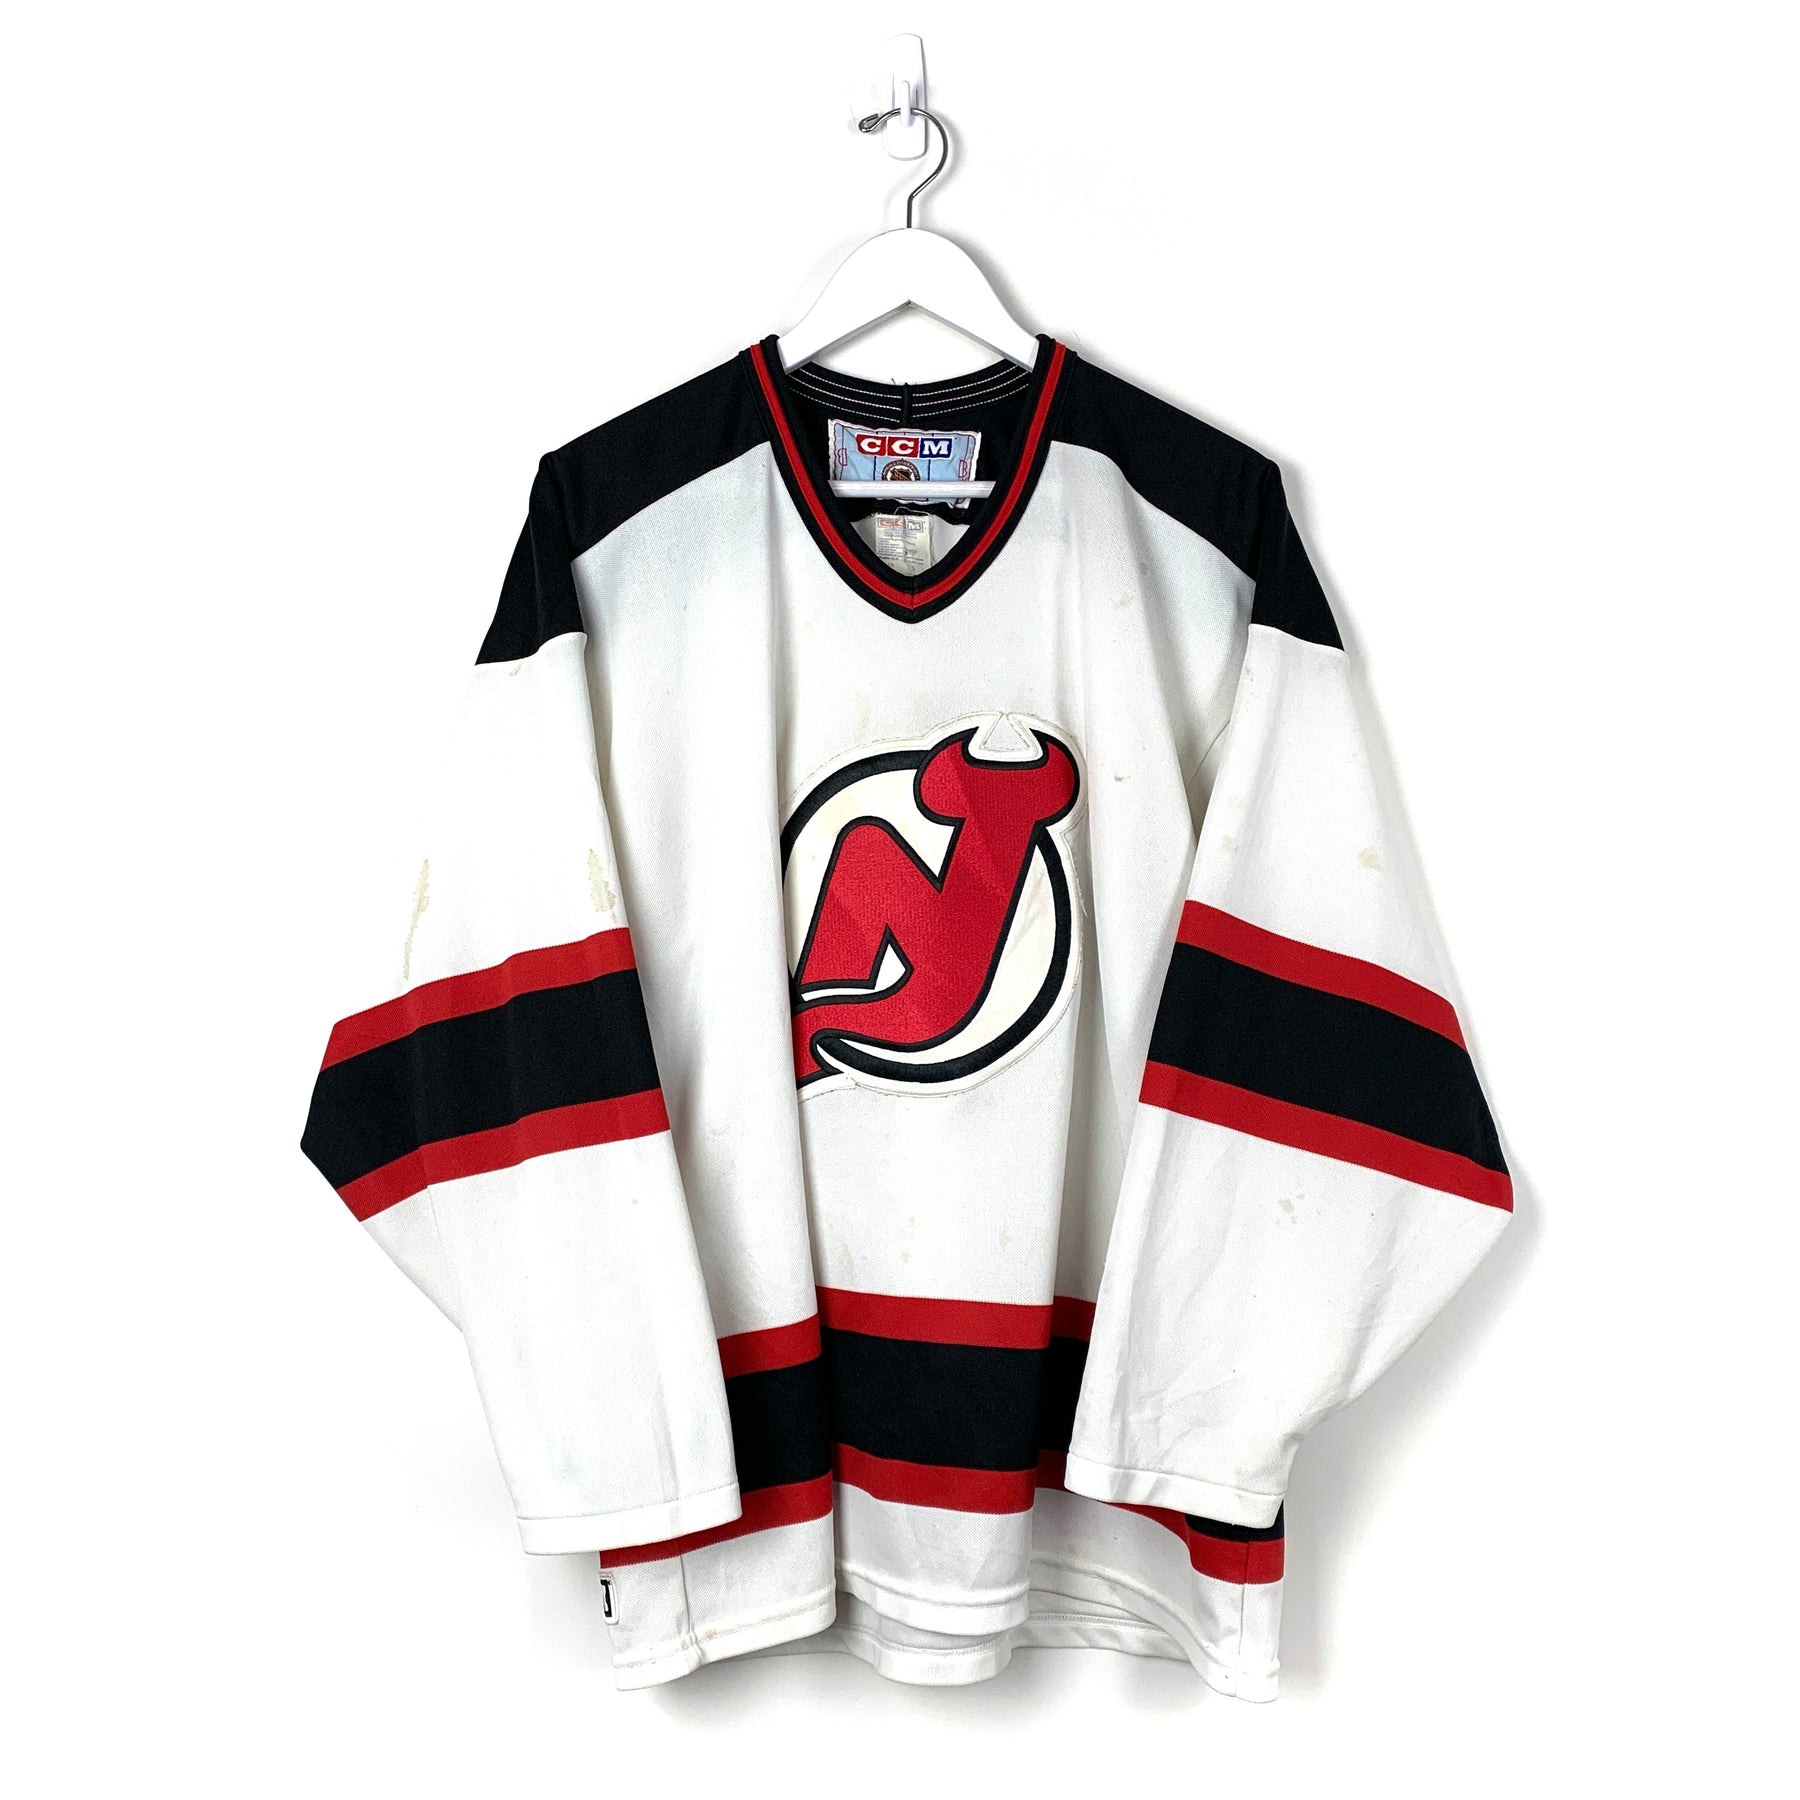 Vintage NHL New Jersey Devils Jersey - Men's Large